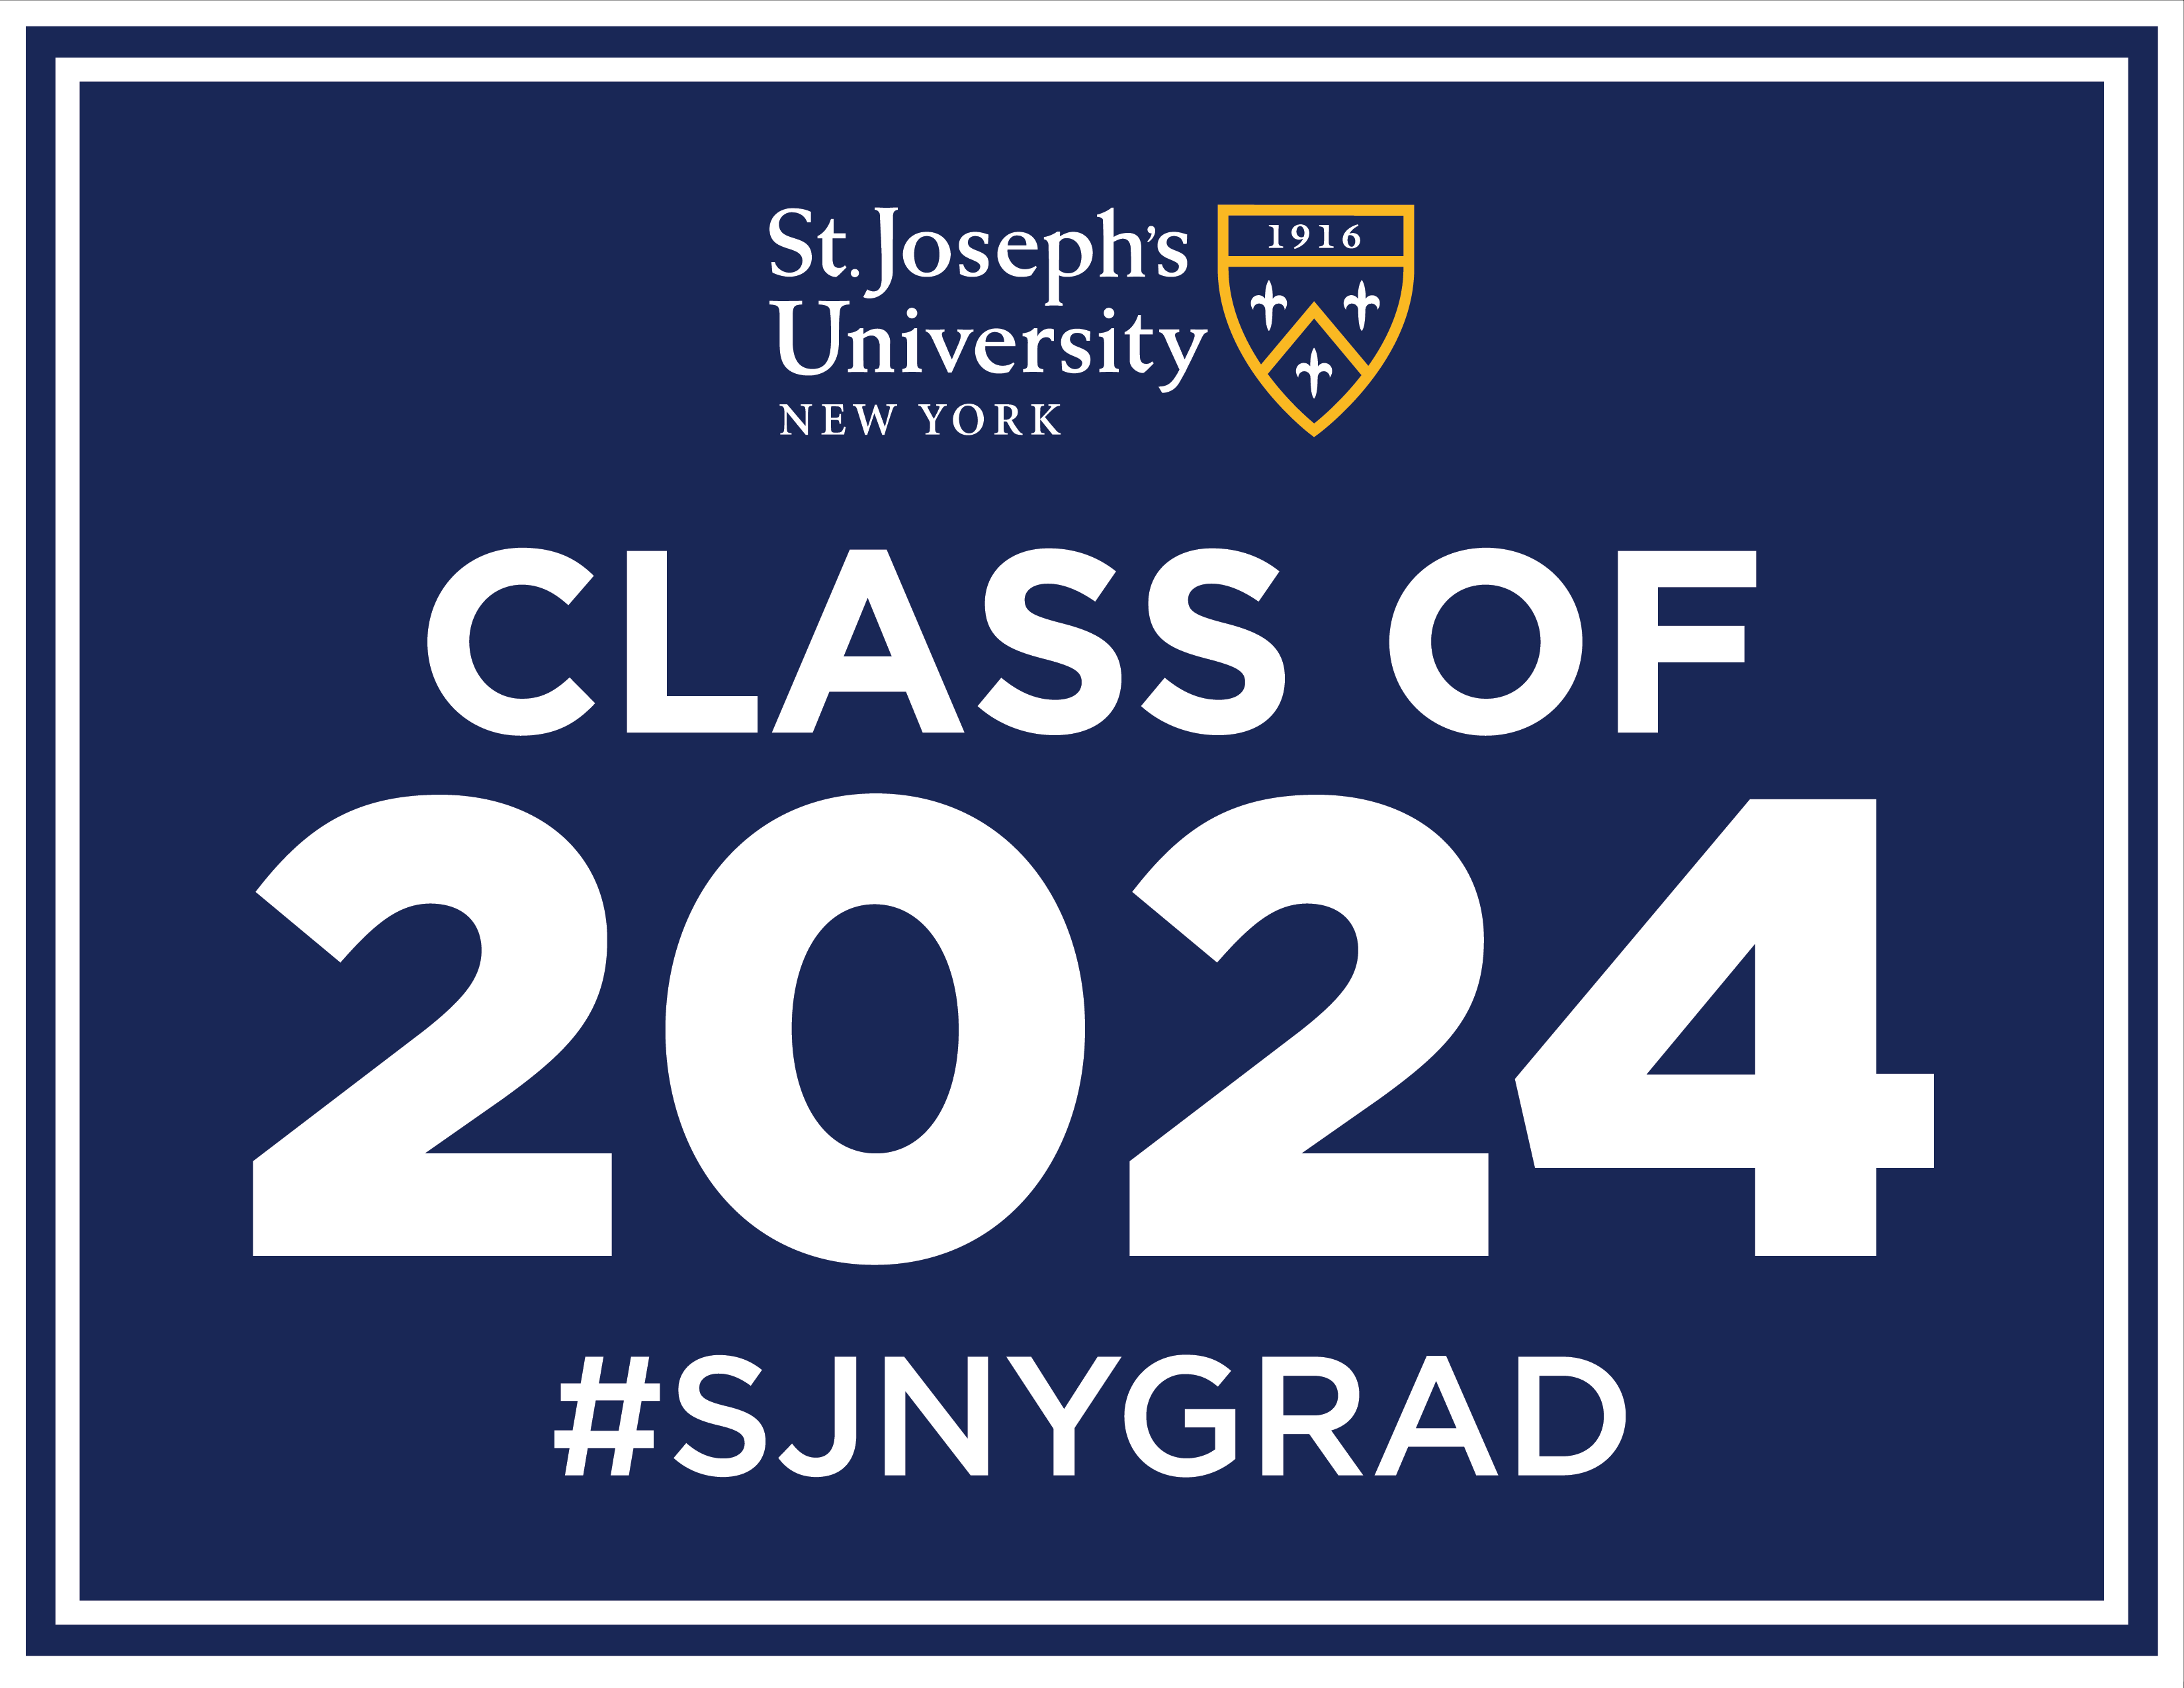 SJNY Class of 2023 Lawn Sign